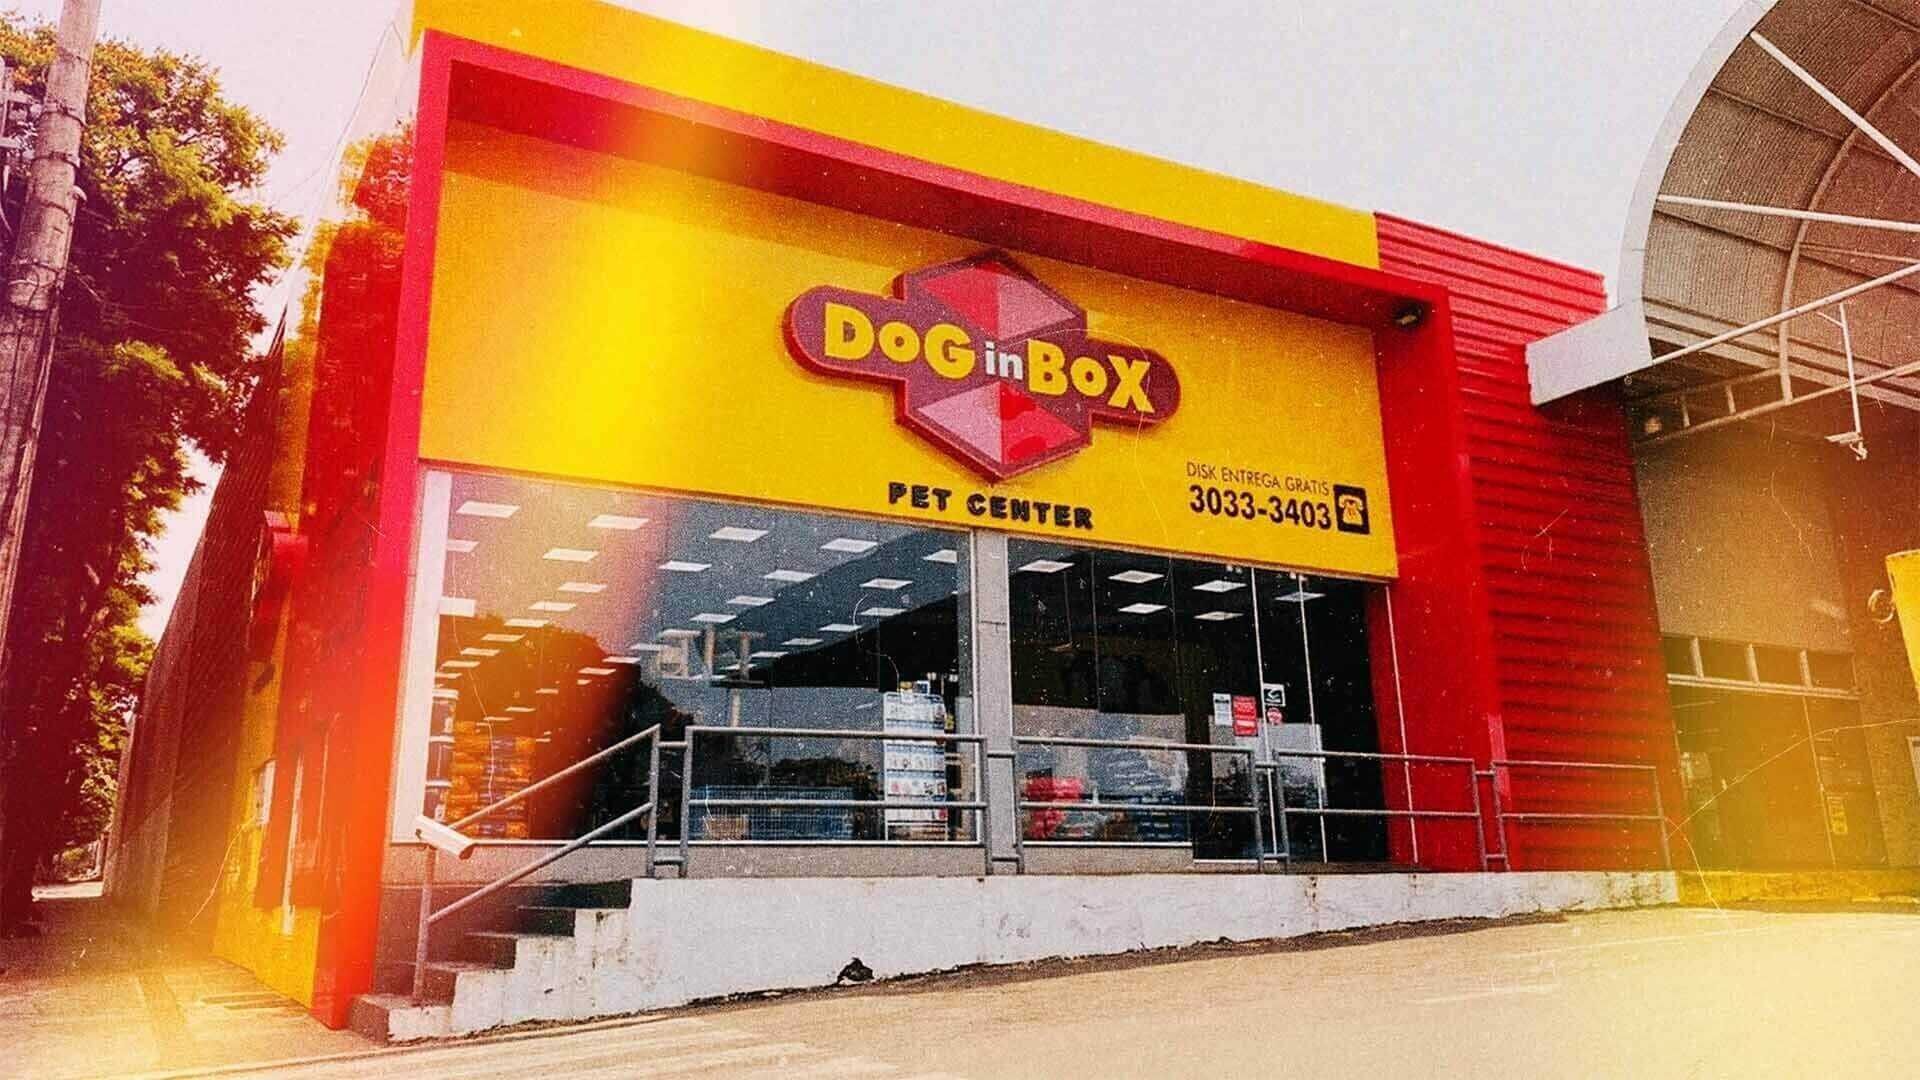 Frente da loja Dog in Box com fachada em amarelo e vermelho.